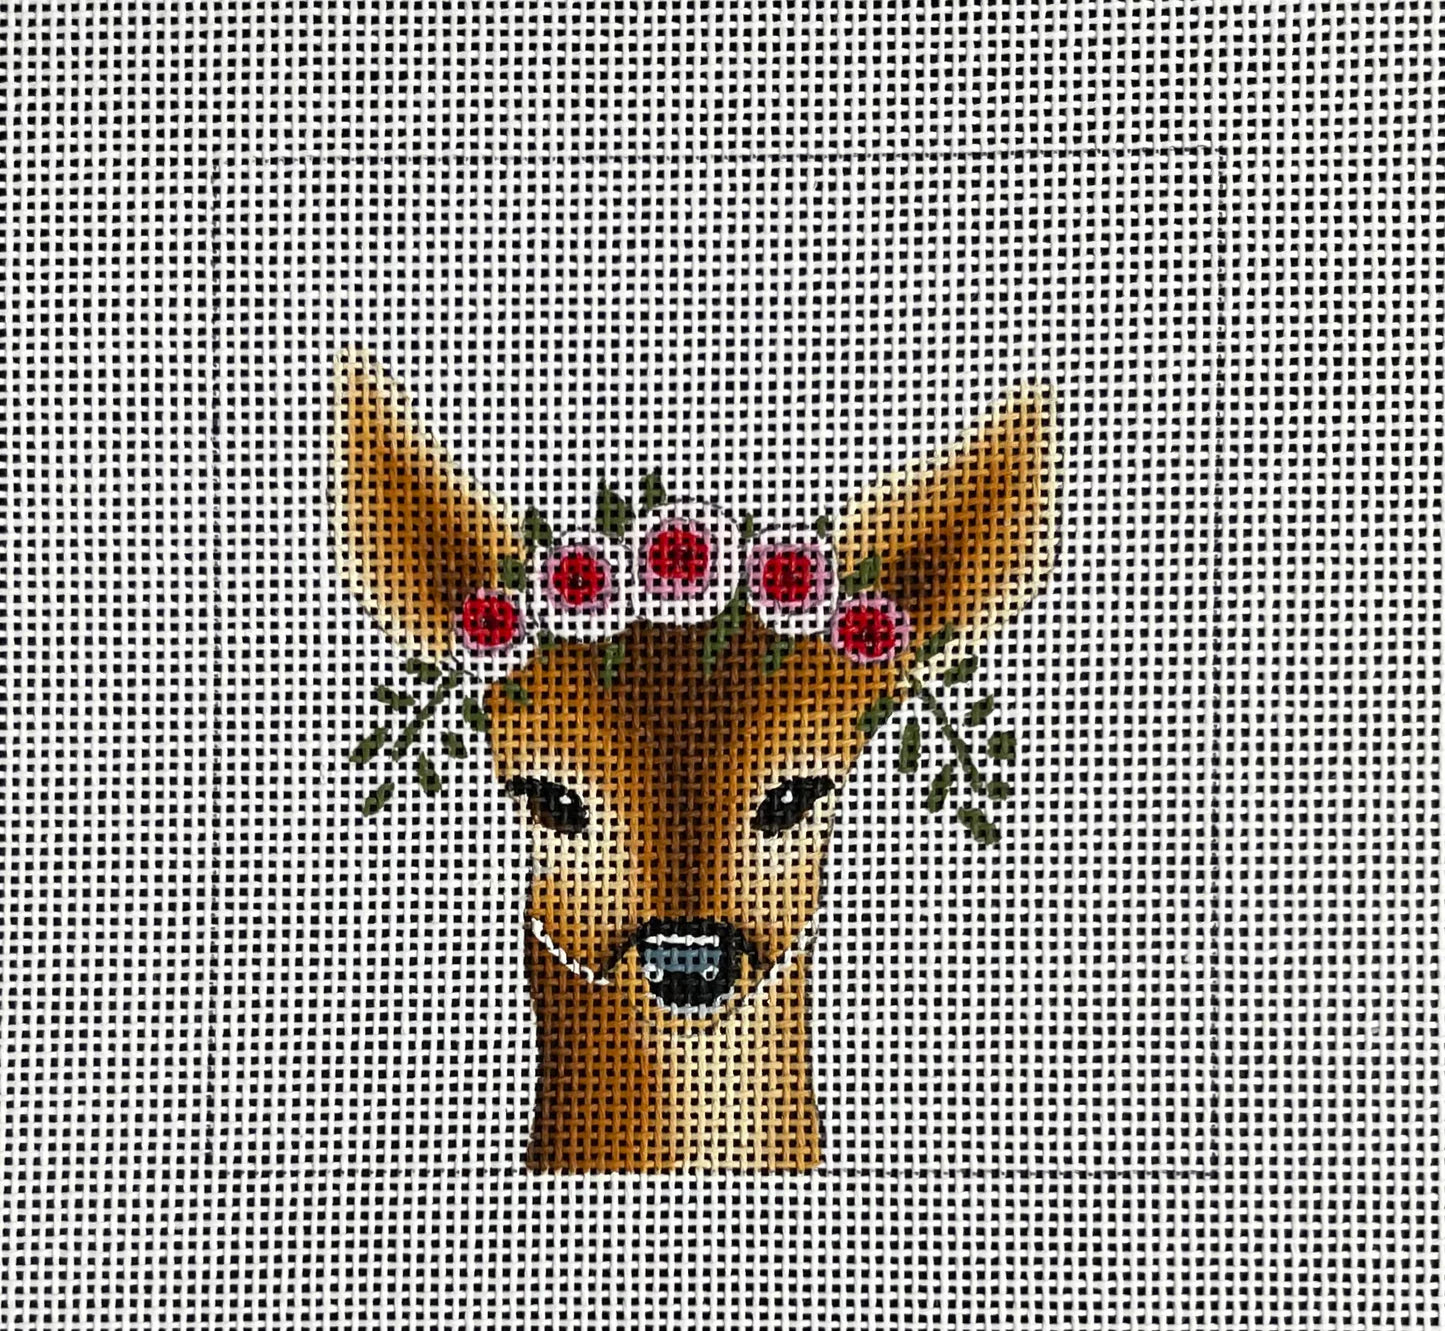 Deer w floral crown Insert COP - IN075